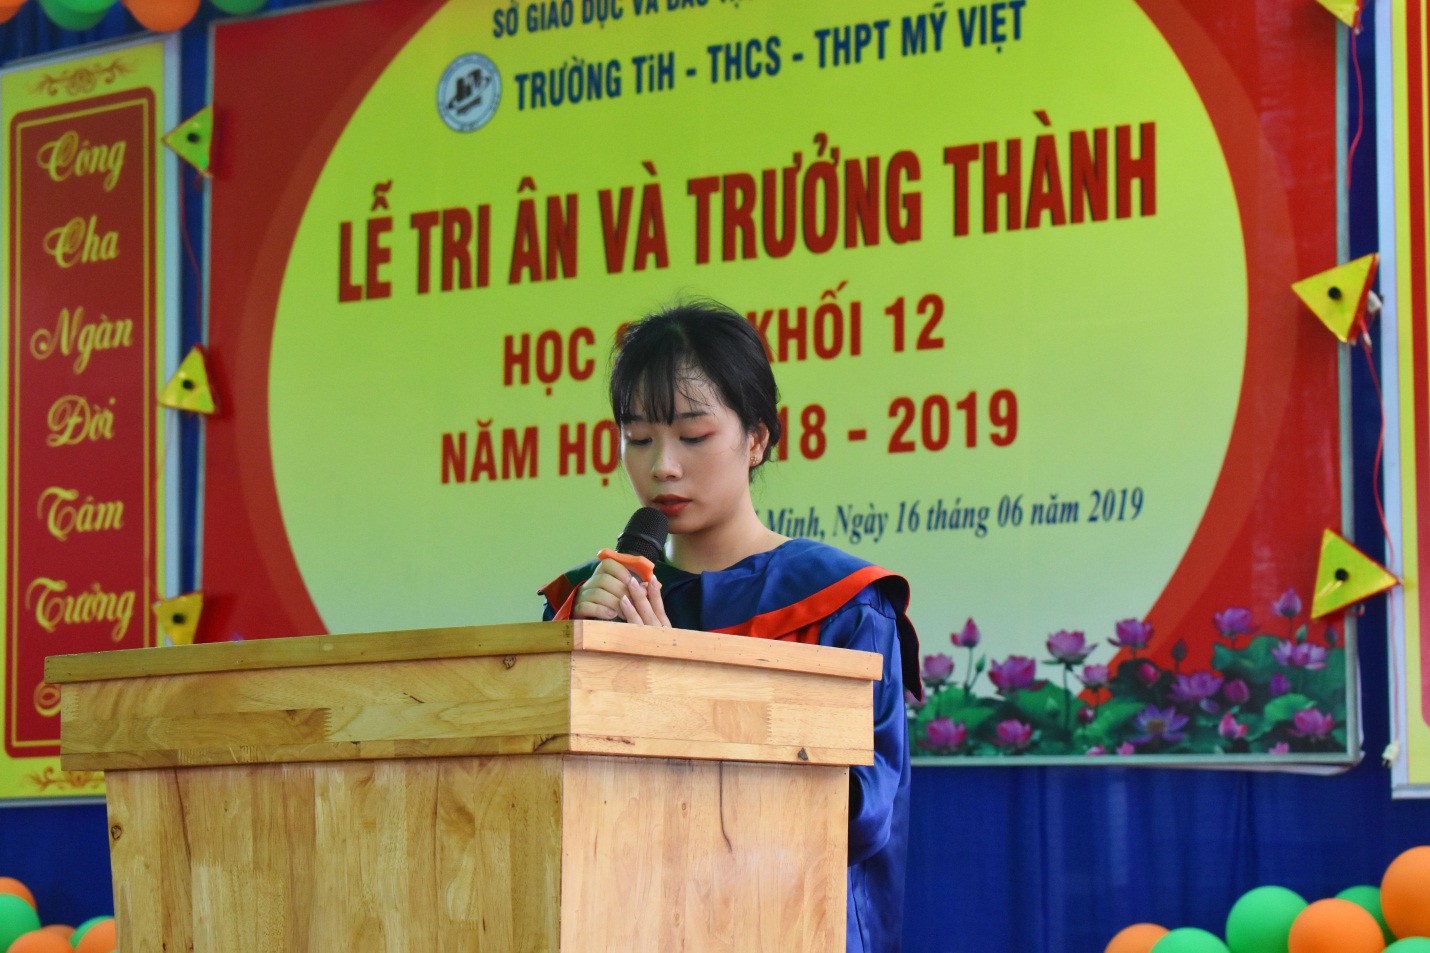 Nước mắt xen lẫn niềm vui trong lễ tri ân và trưởng thành của teen Mỹ Việt - Ảnh 3.